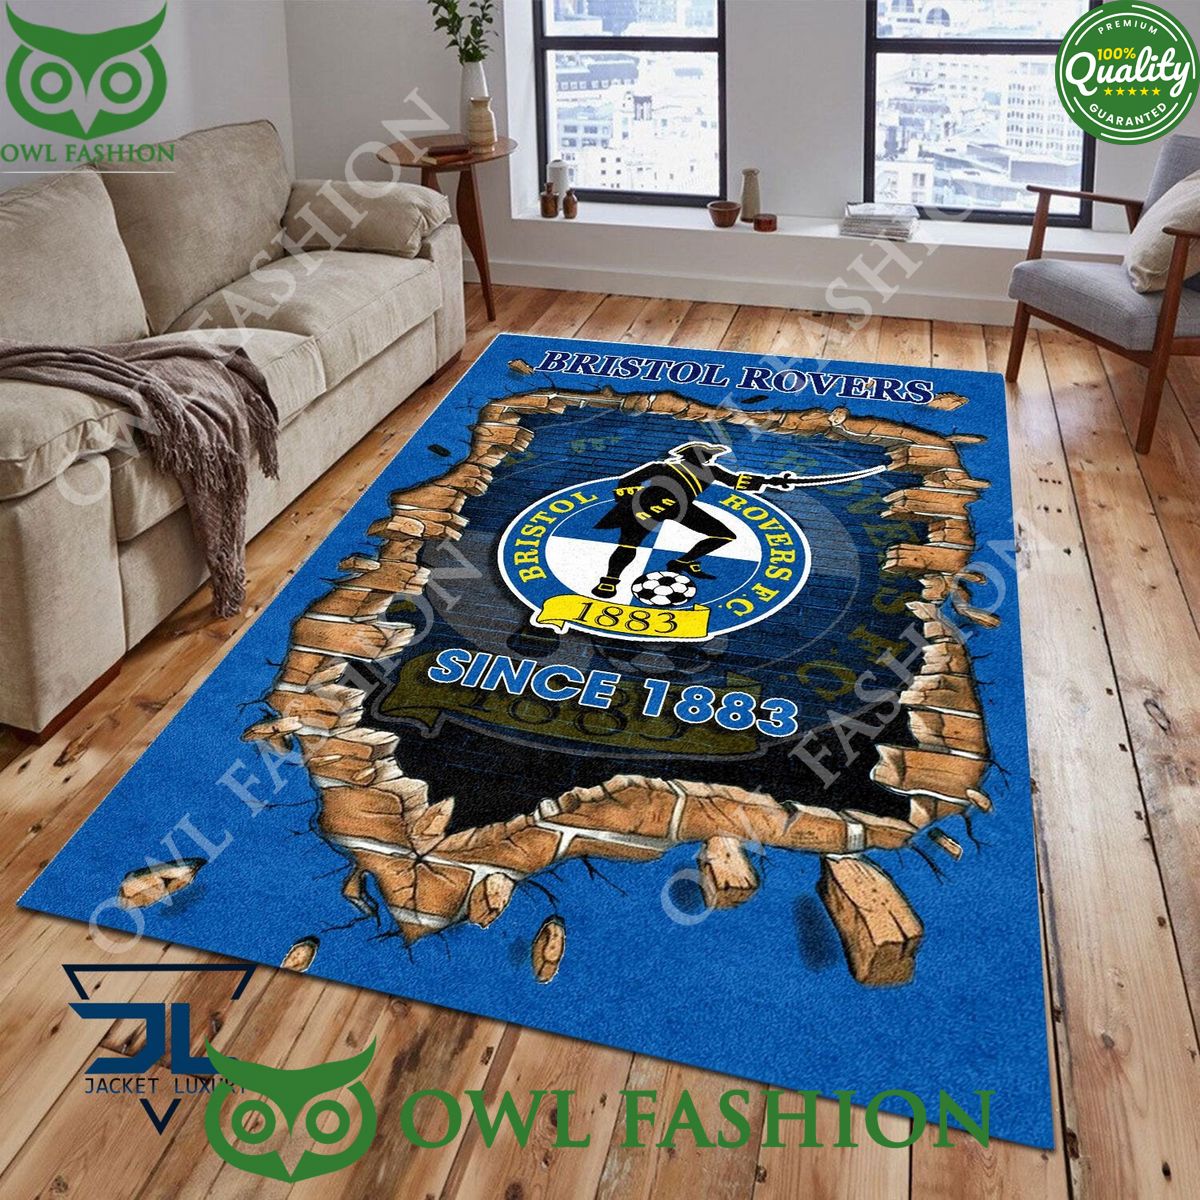 football bristol rovers 1821 epl living room rug carpet 1 8HwKl.jpg